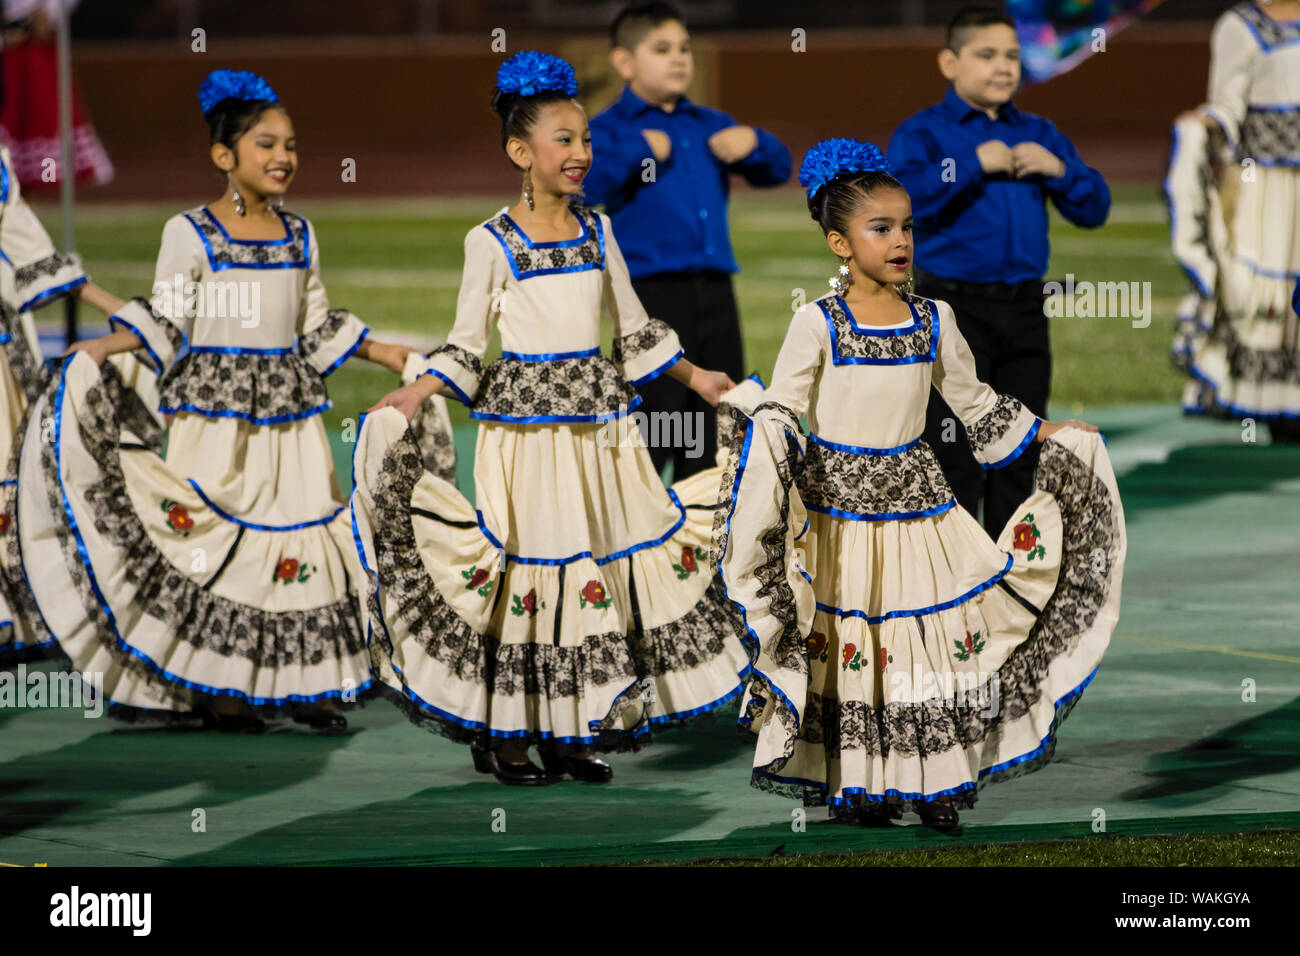 Les enfants de la danse folklorique mexicaine en vêtements traditionnels. (Usage éditorial uniquement) Banque D'Images